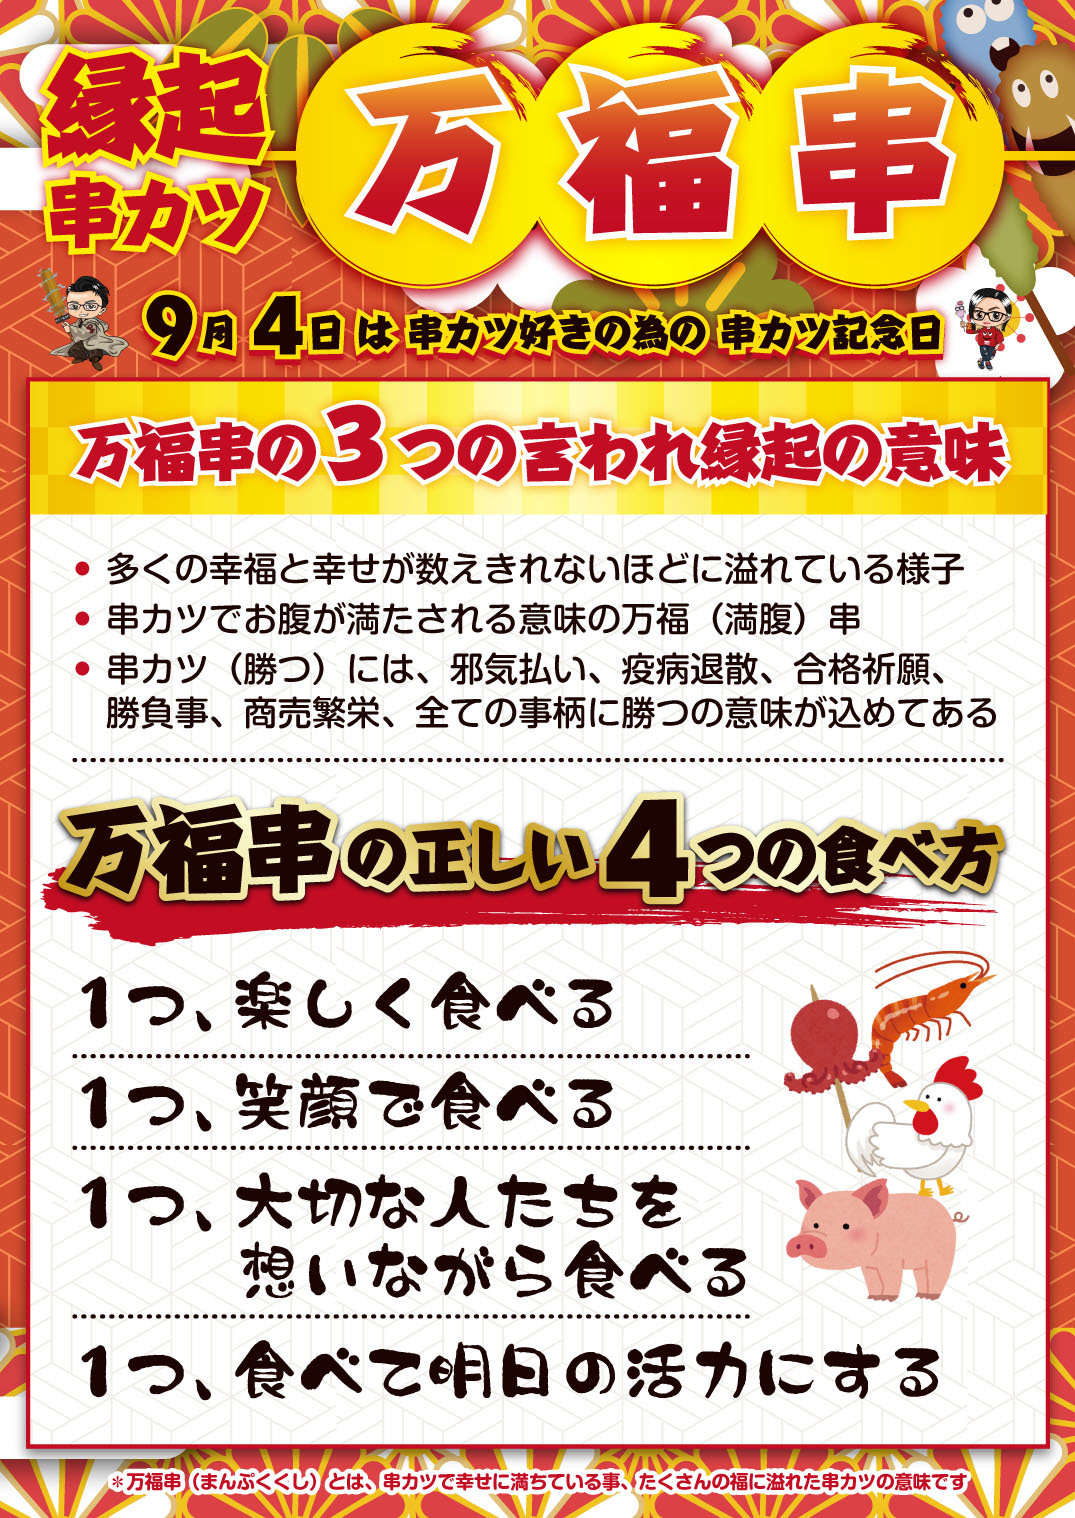 一般社団法人日本串カツ協会が、9月4日「串カツ記念日」の
目玉として、演技の良い串カツ「万福串」を発表